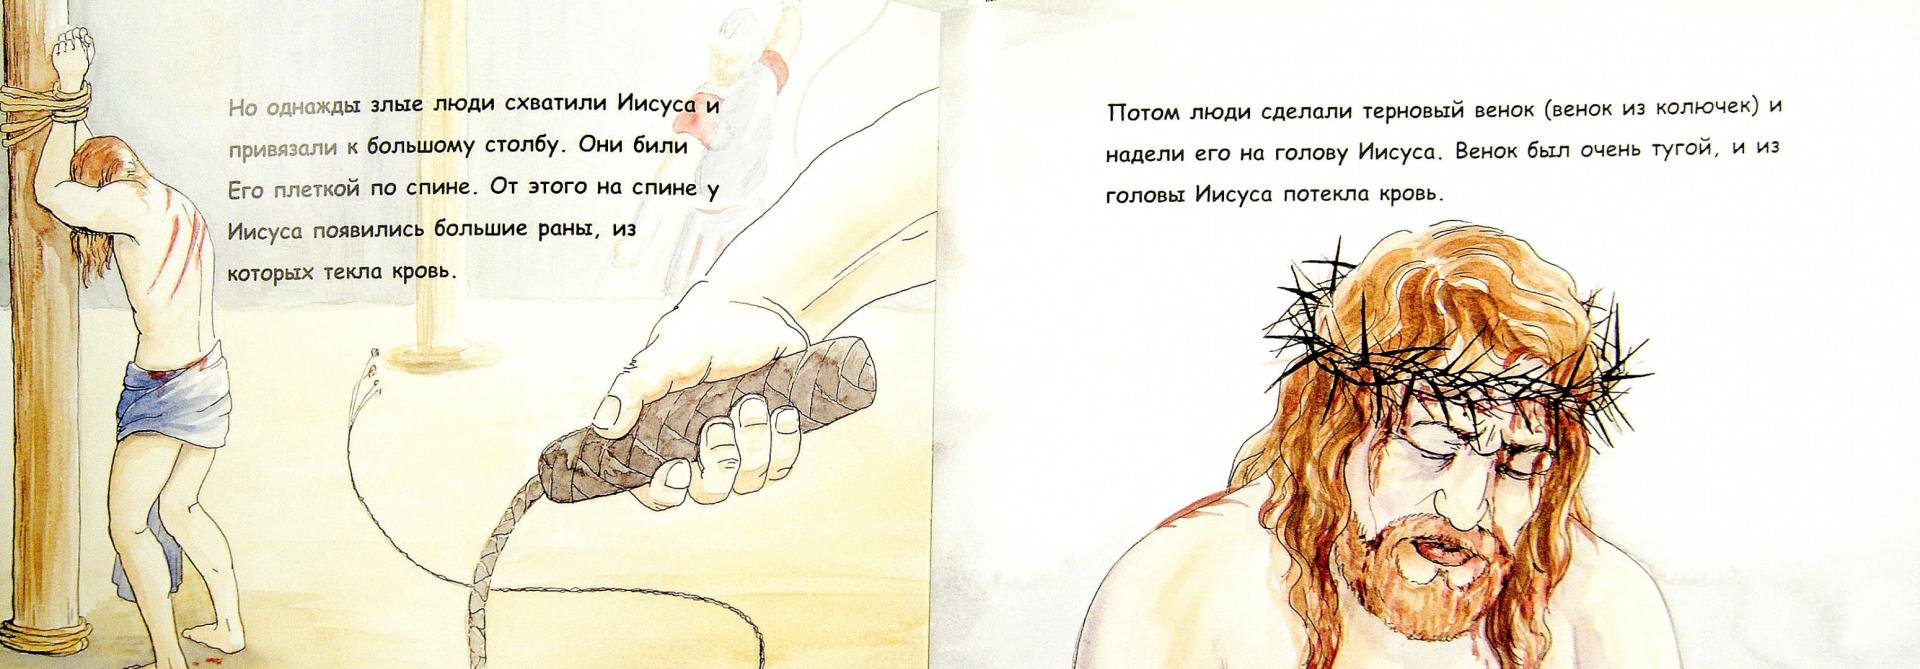 Иллюстрация 1 из 16 для История Иисуса - Дон Хаммат | Лабиринт - книги. Источник: Лабиринт